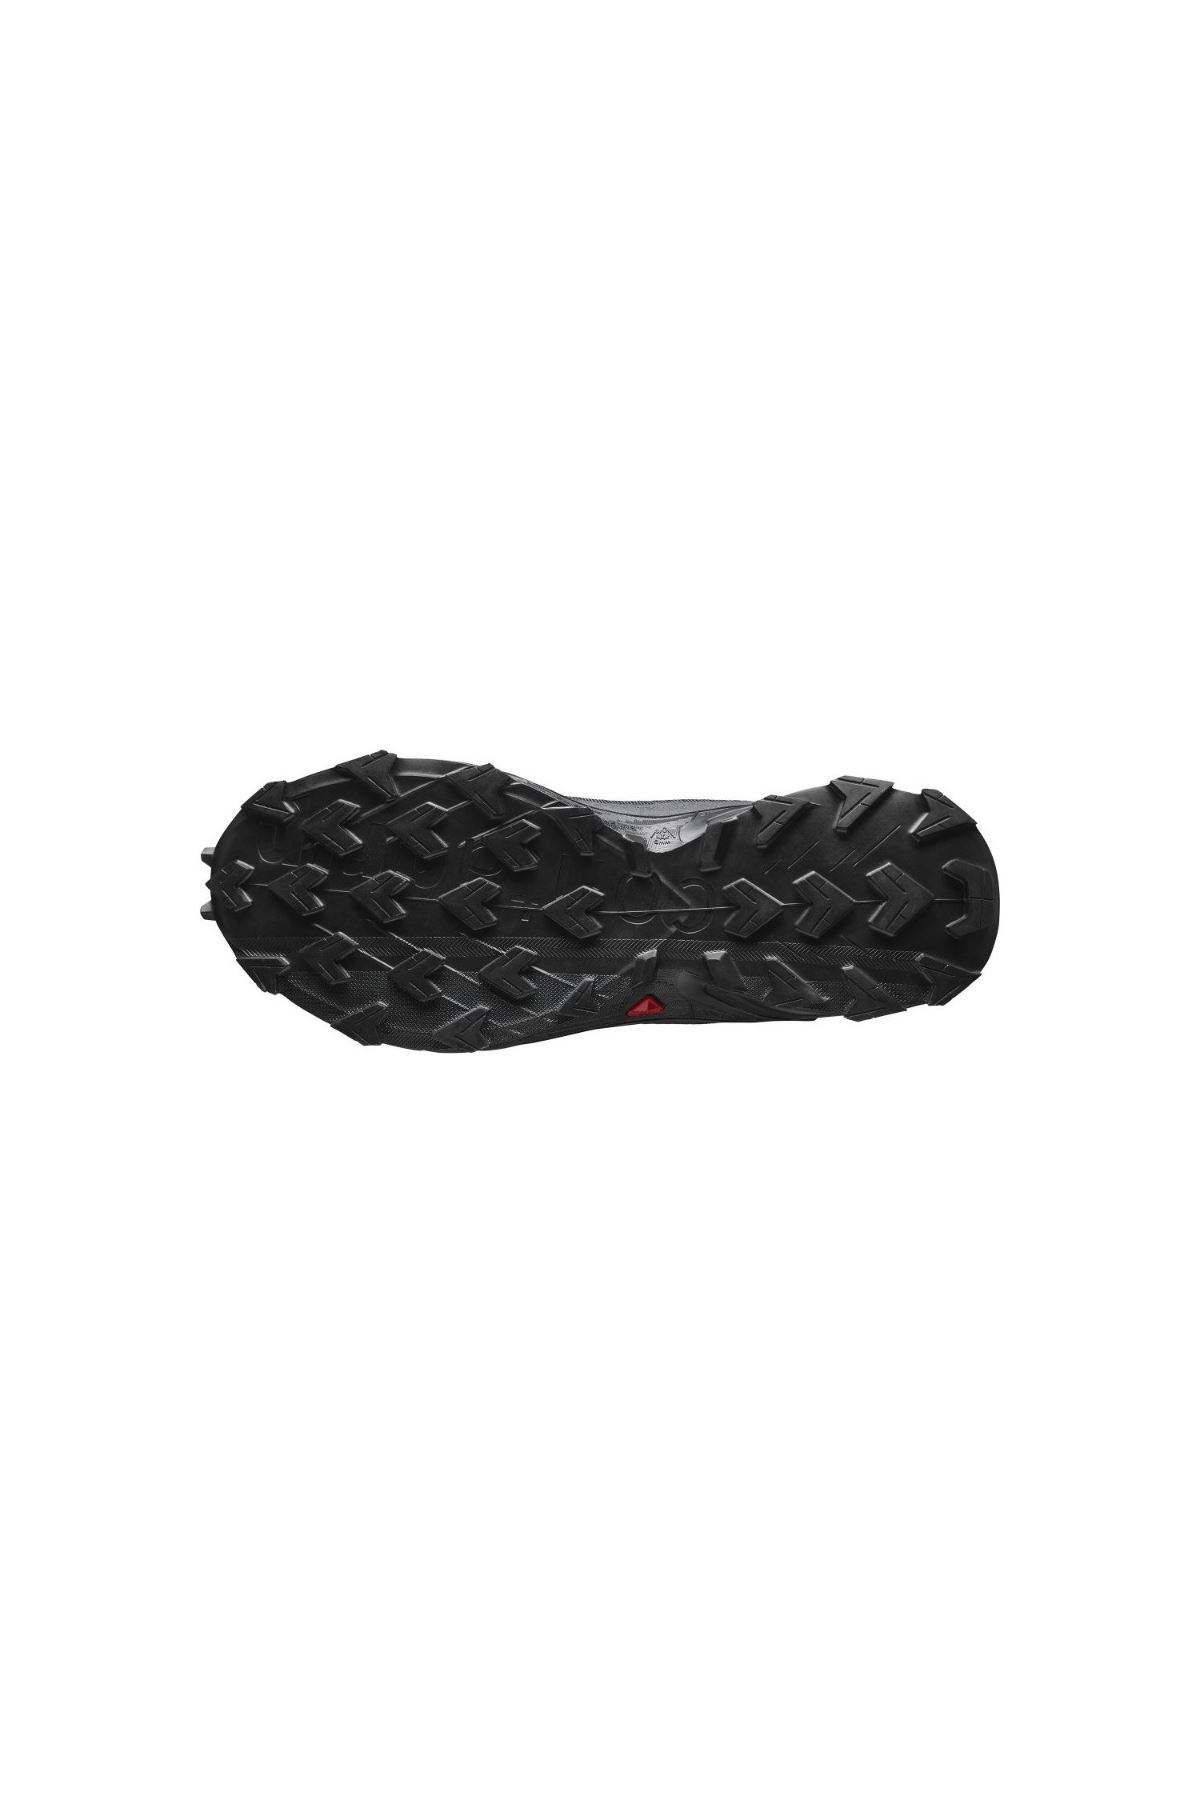 Alphacross 4 Erkek Siyah Spor Ayakkabı - L47063900